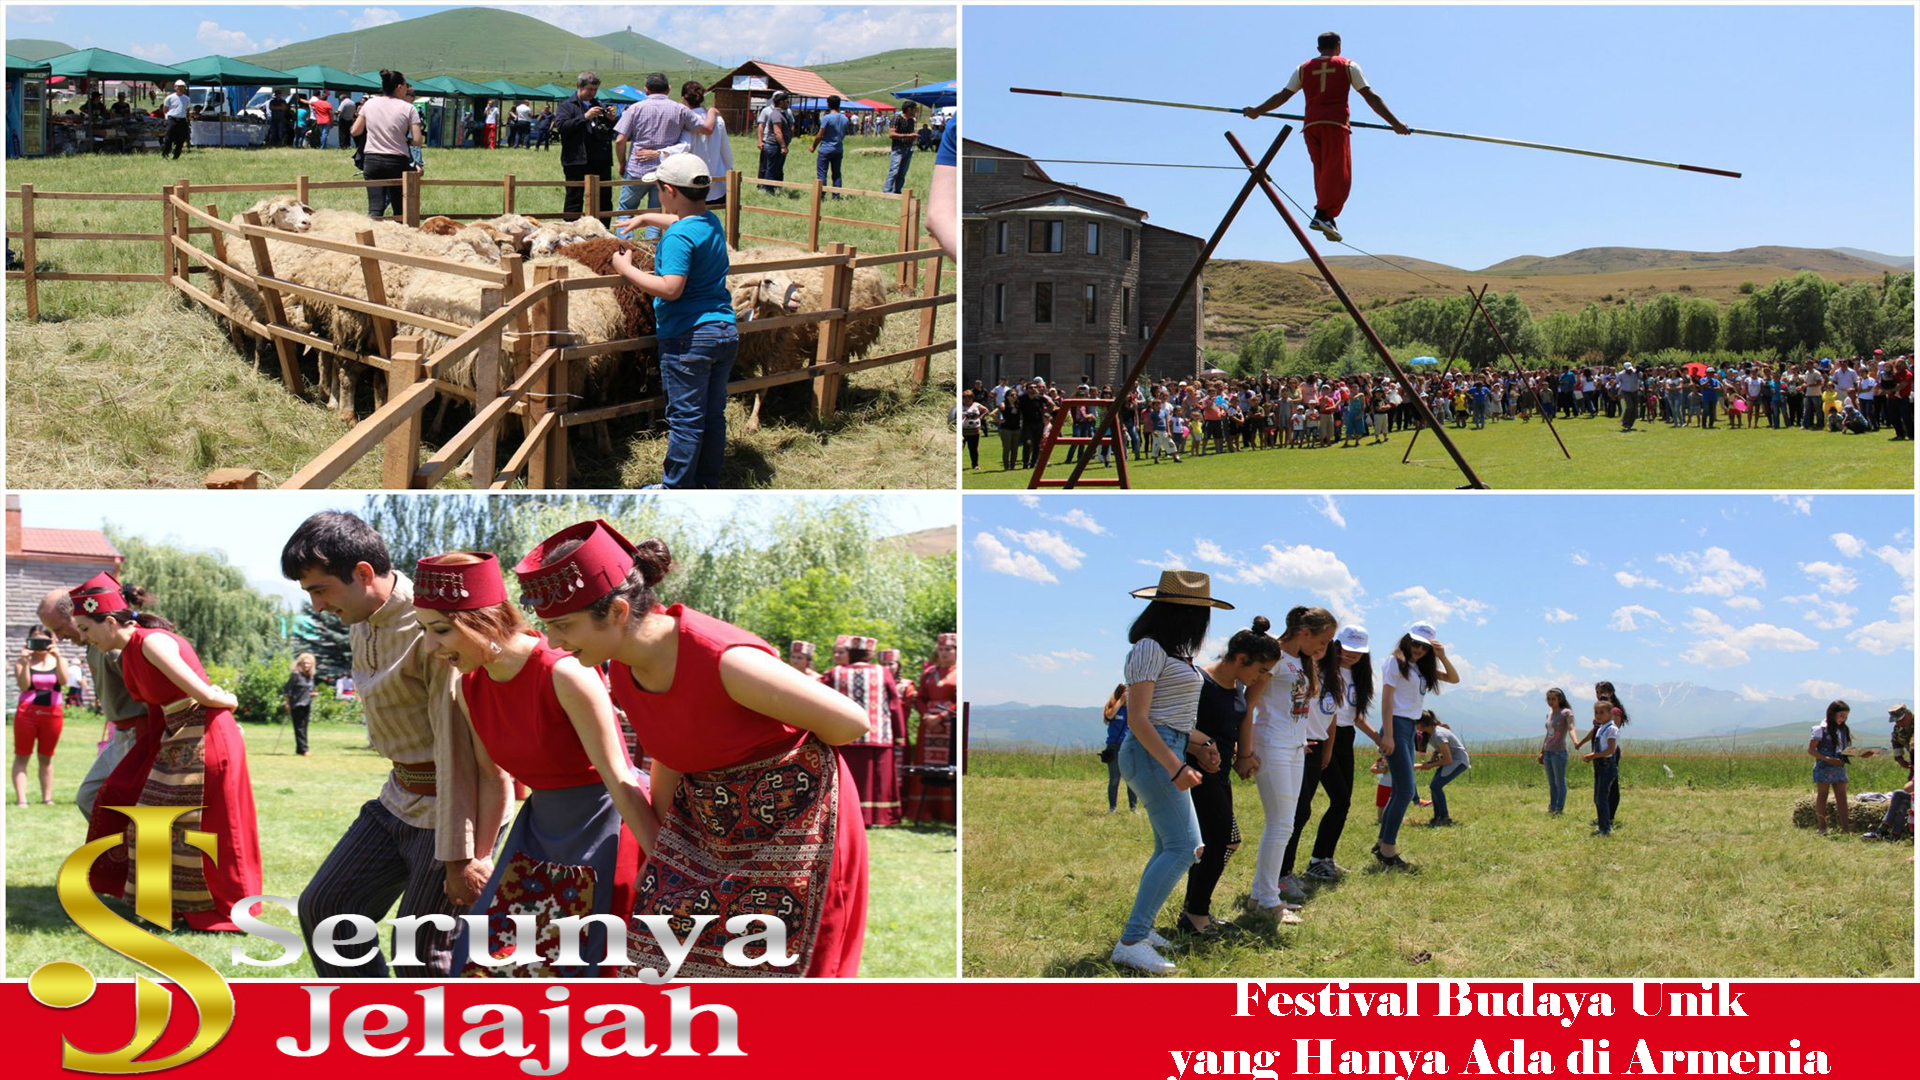 Festival Budaya Unik yang Hanya Ada di Armenia